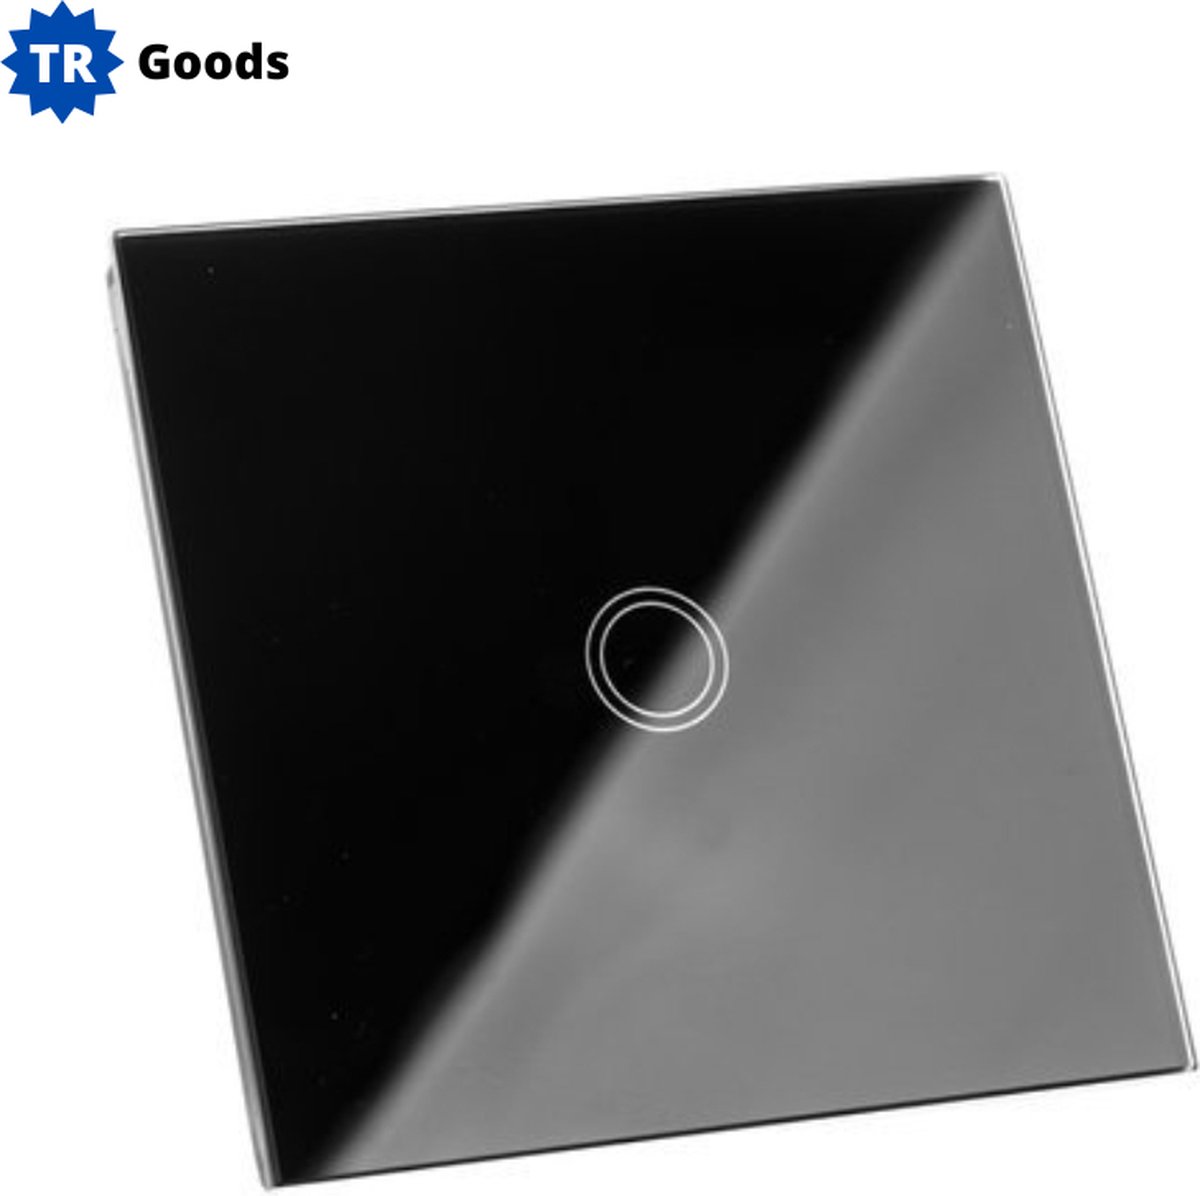 T.R. Goods Touch Glazen Lichtschakelaar met verlichting - Wandschakelaar - Touch - Glazen paneel - Touchscreen - Inbouwschakelaar - Zwart